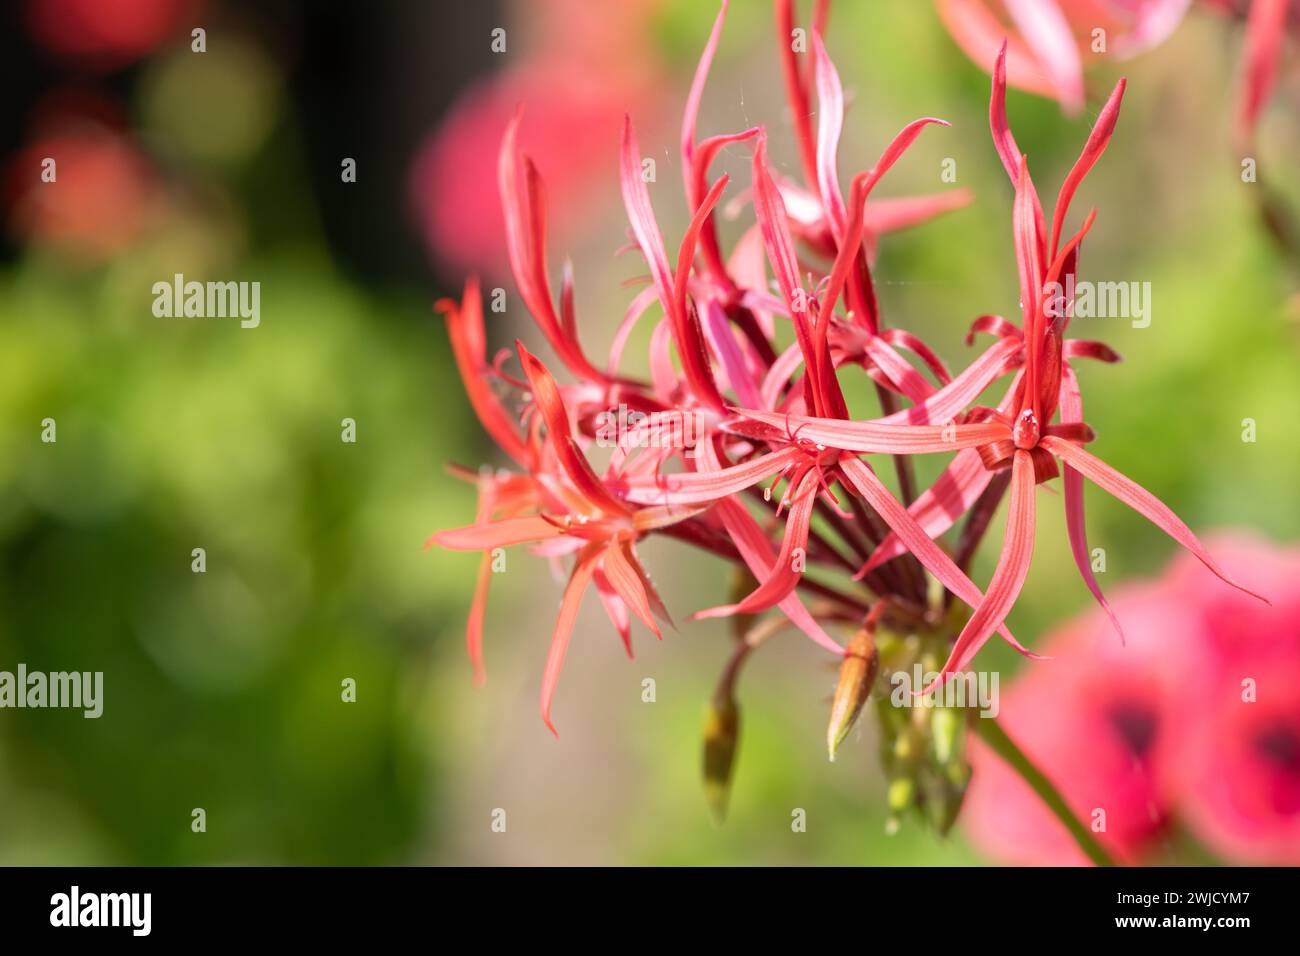 Close up of pelargonium stenopetalum flowers in bloom Stock Photo